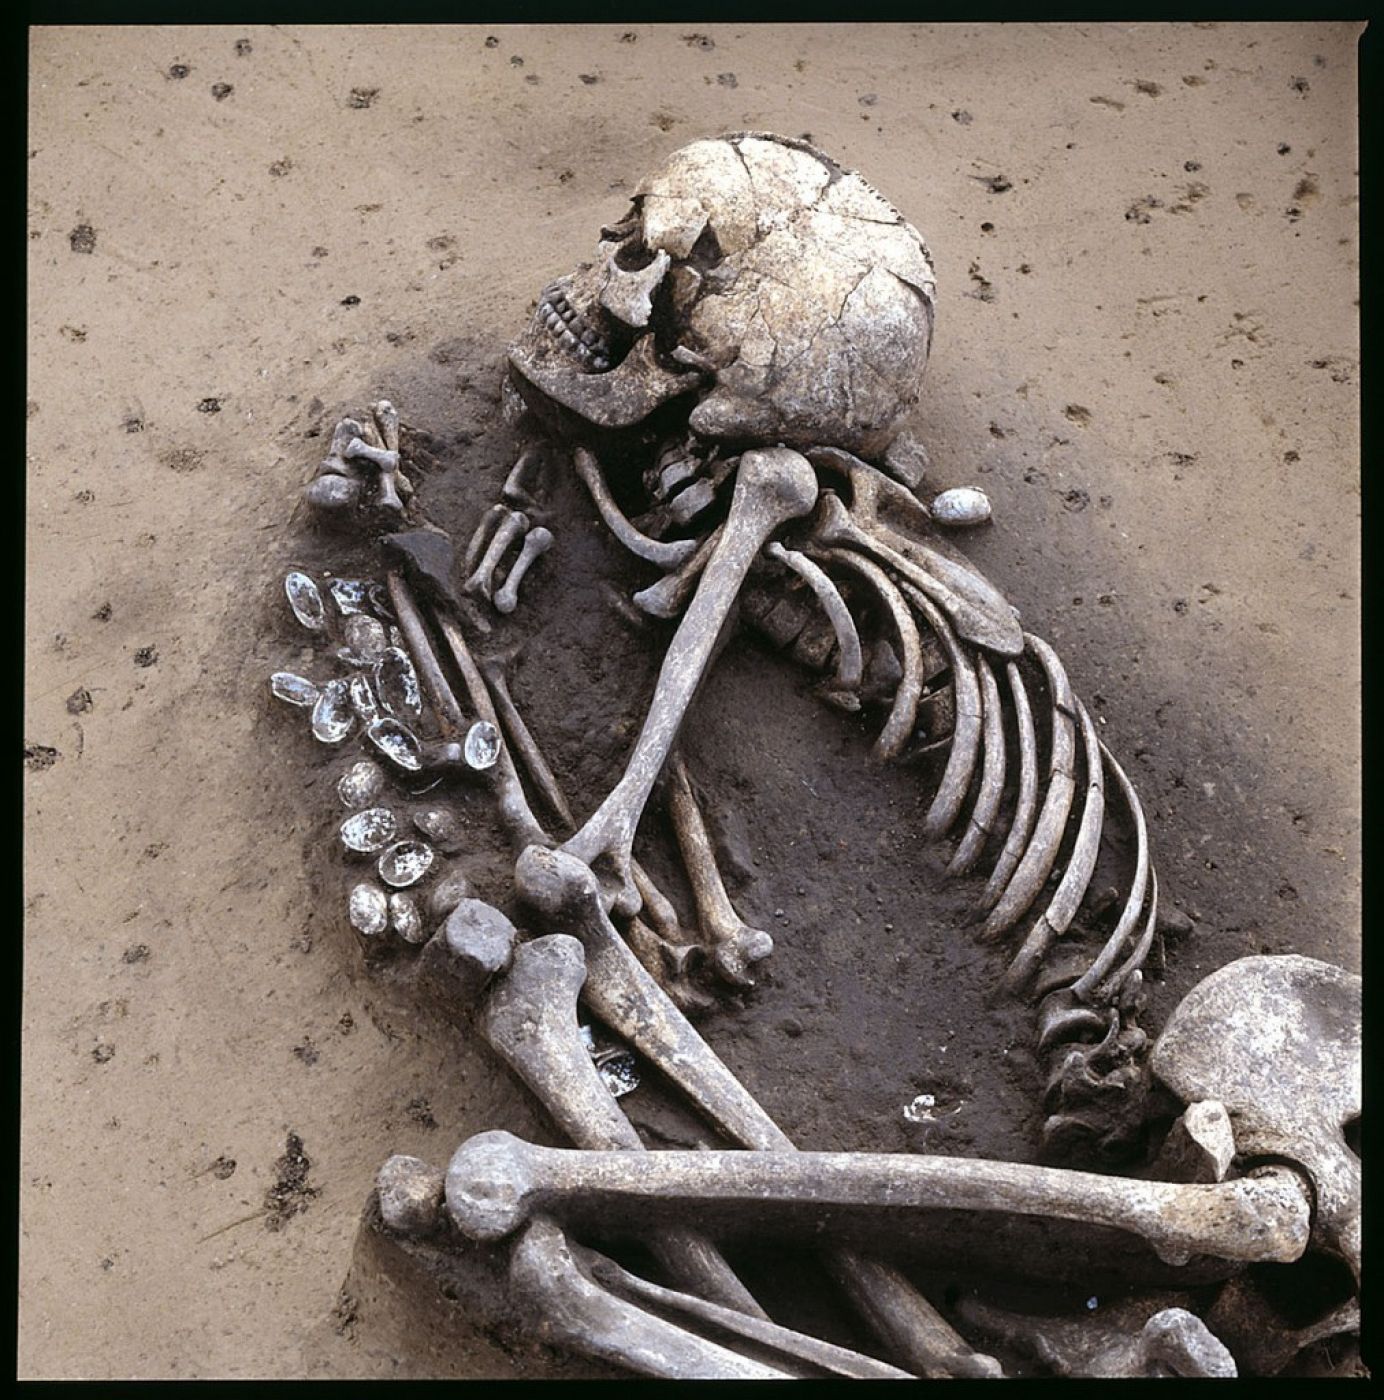 Esqueleto de un hombre enterrado que se asocia con el neolítico medio en Alemania.